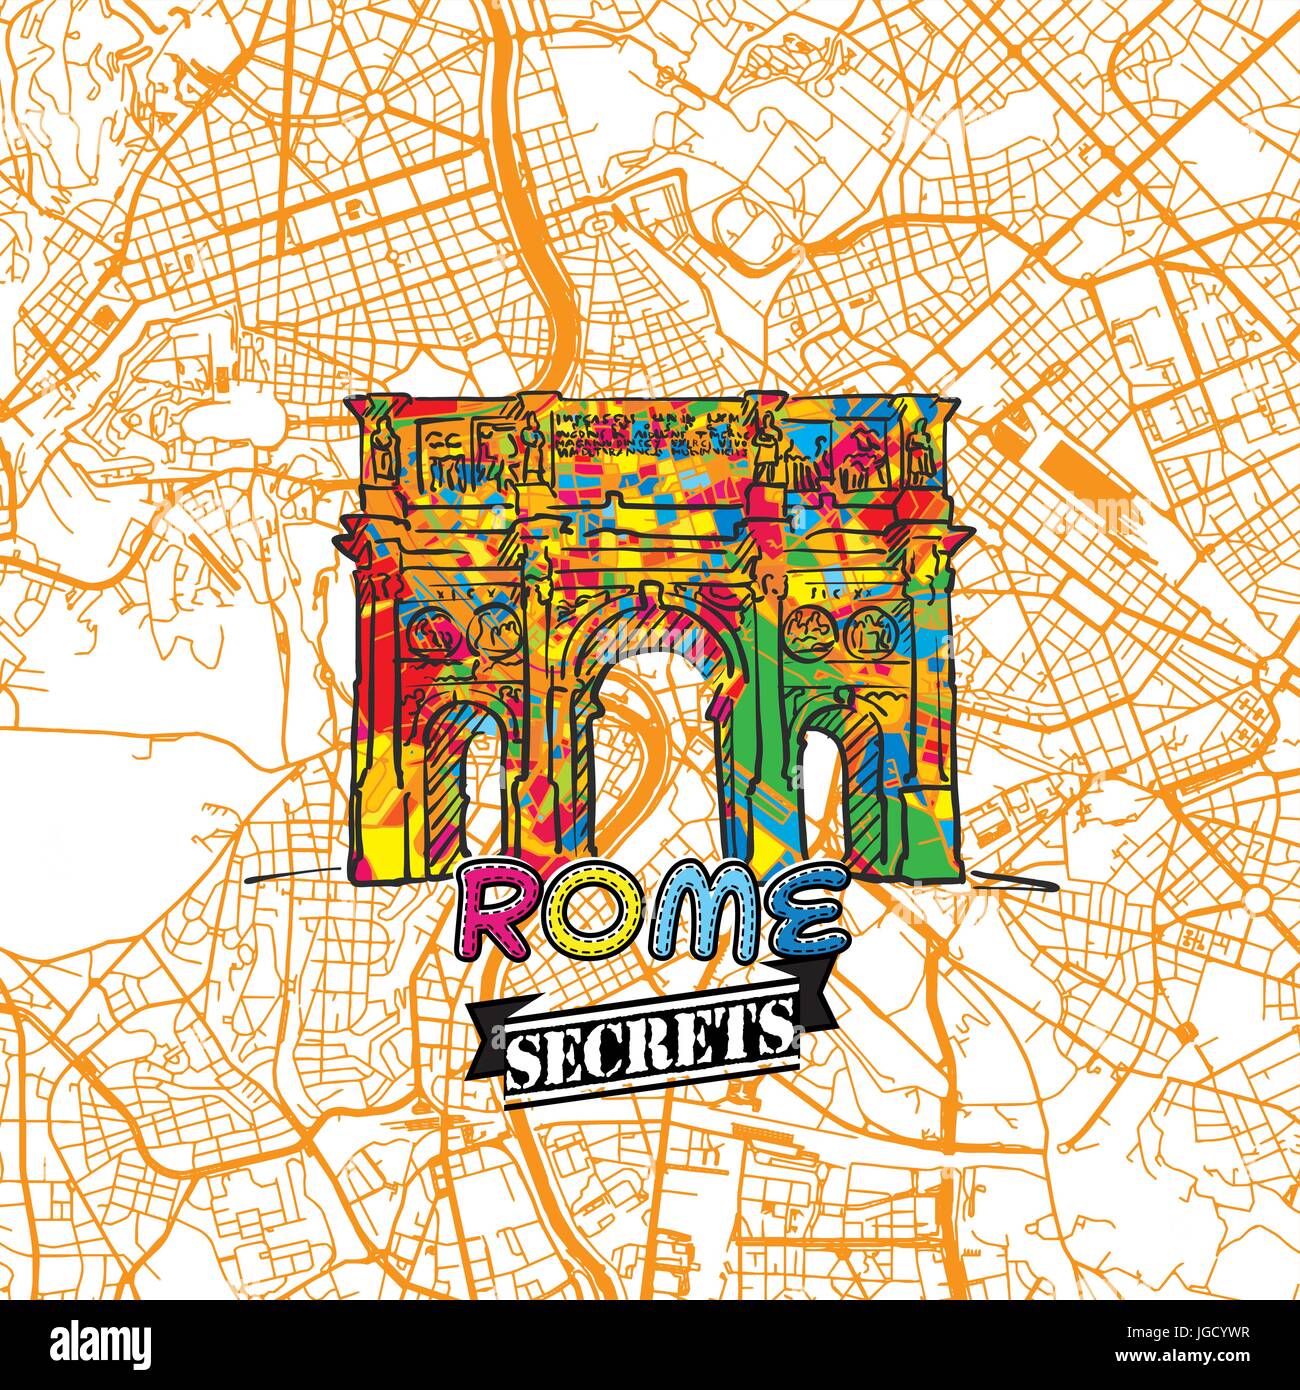 Rom reisen Geheimnisse Art Map für die Zuordnung von Experten und Reiseführer. Handgemachte Stadt Logo, Typo-Abzeichen und Hand gezeichnete Vektorbild auf Top sind gruppiert und m Stock Vektor